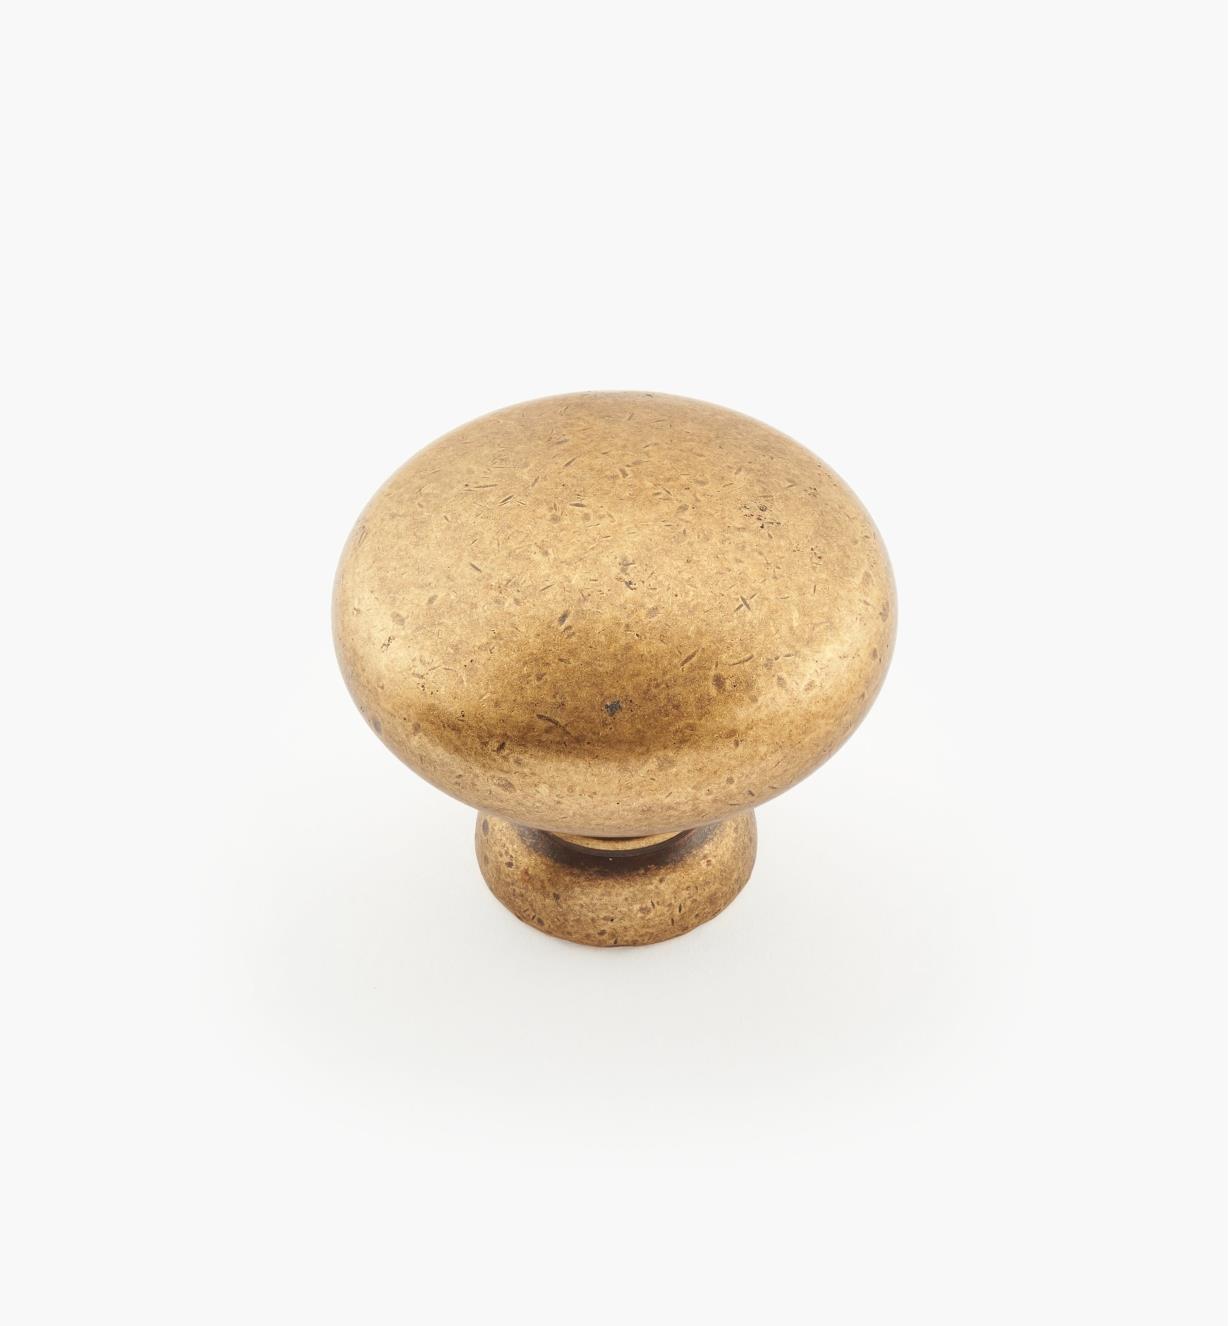 01A0632 - 32mm x 25mm Antique Brass Knob